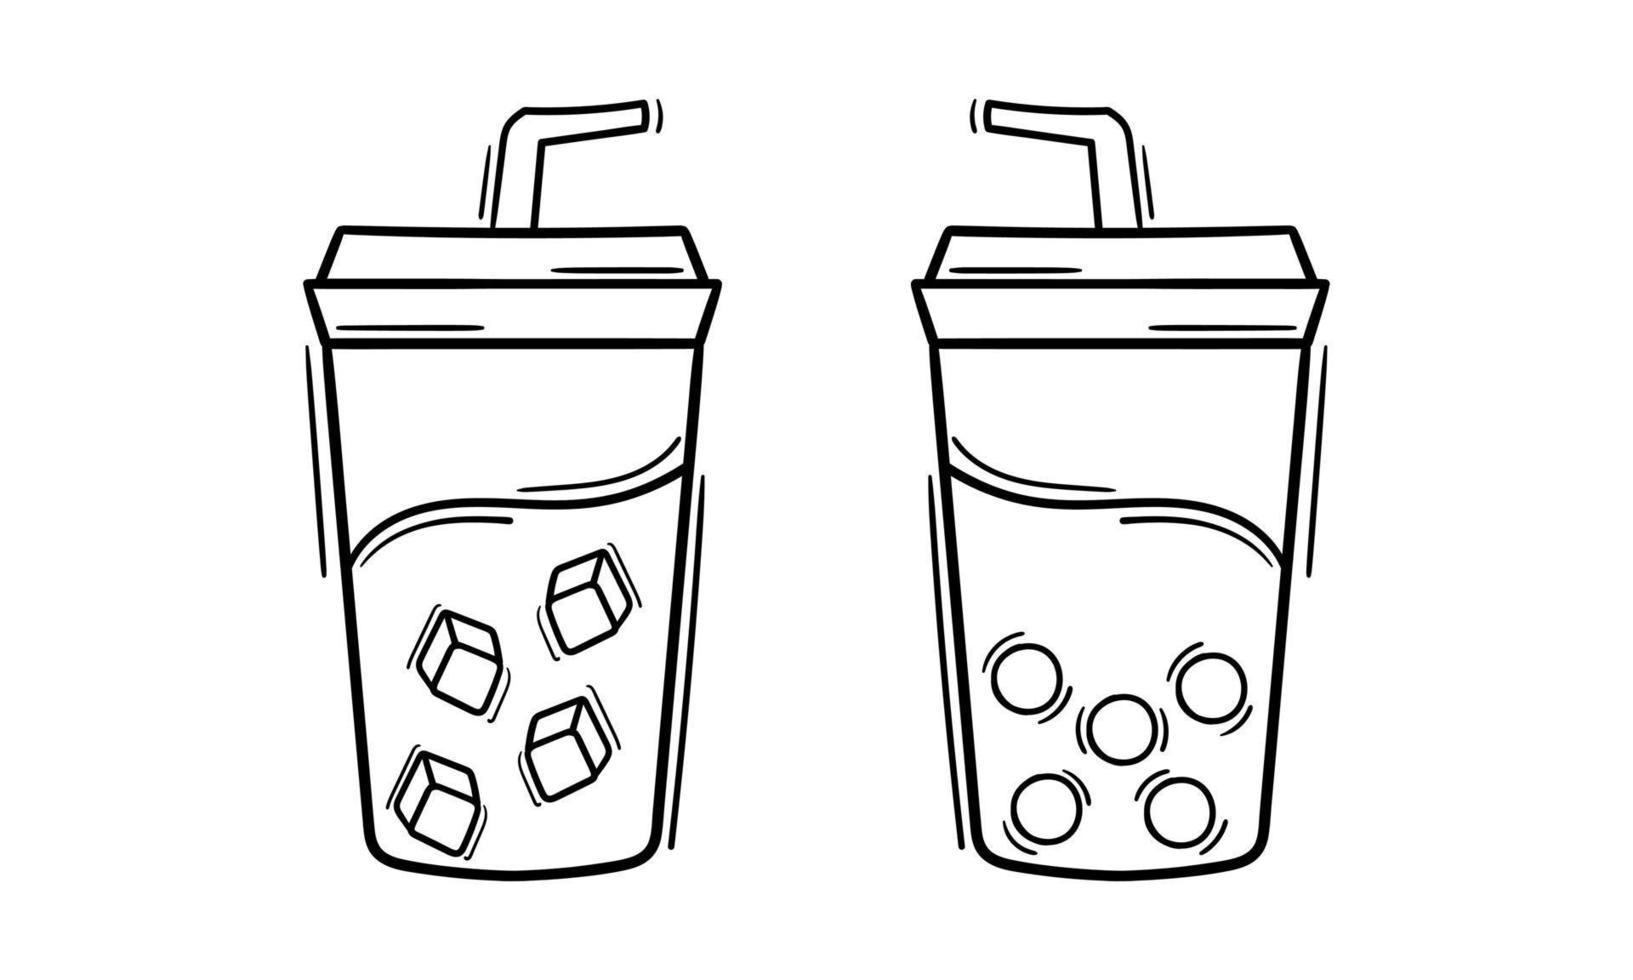 boba drink outline illustration 2 vector